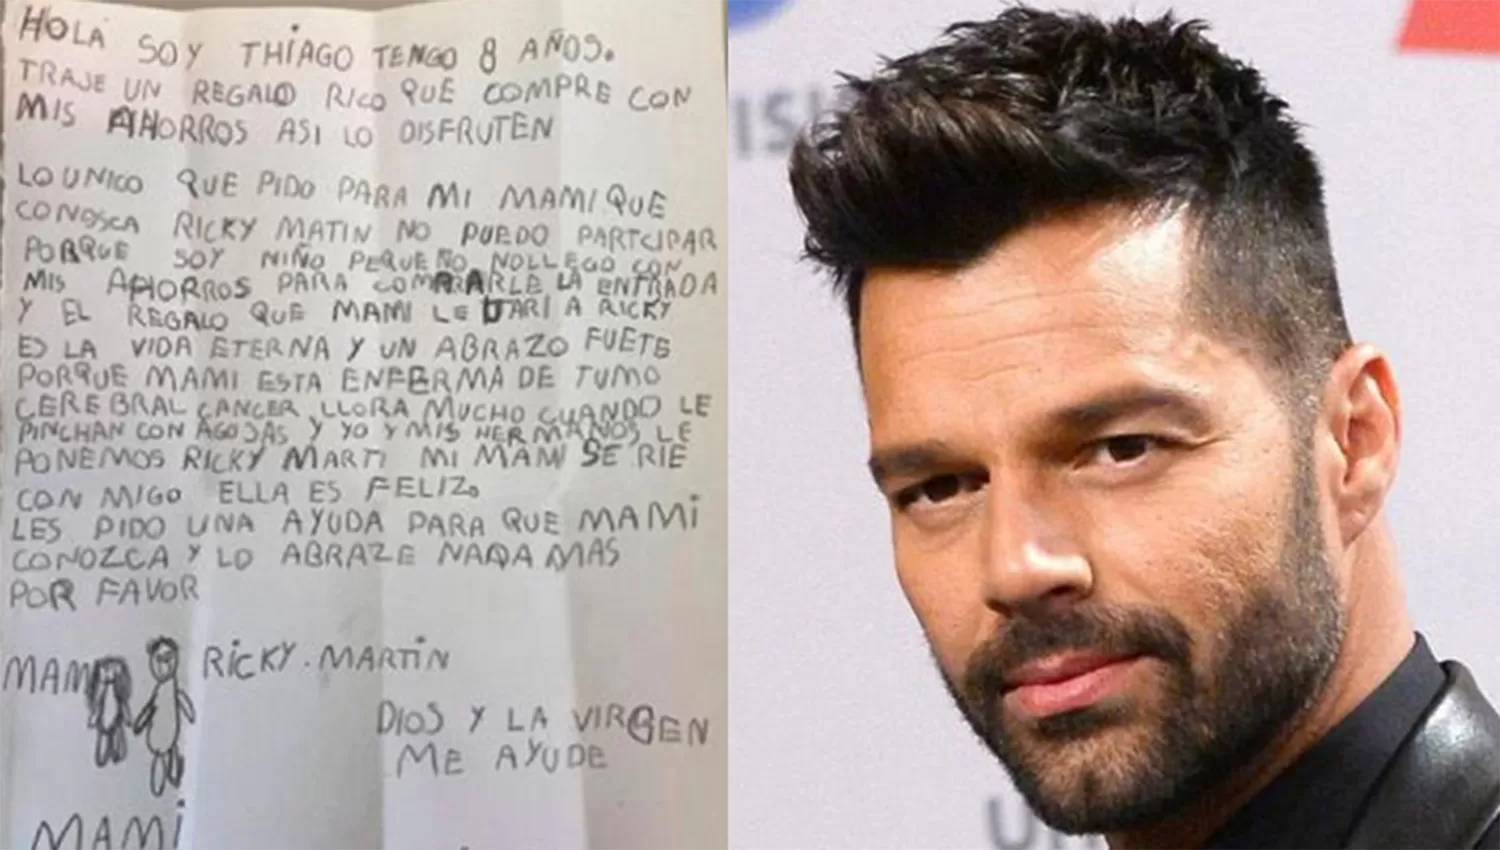 Gastó sus ahorros para que su mamá que tiene cáncer conozca a Ricky Martin